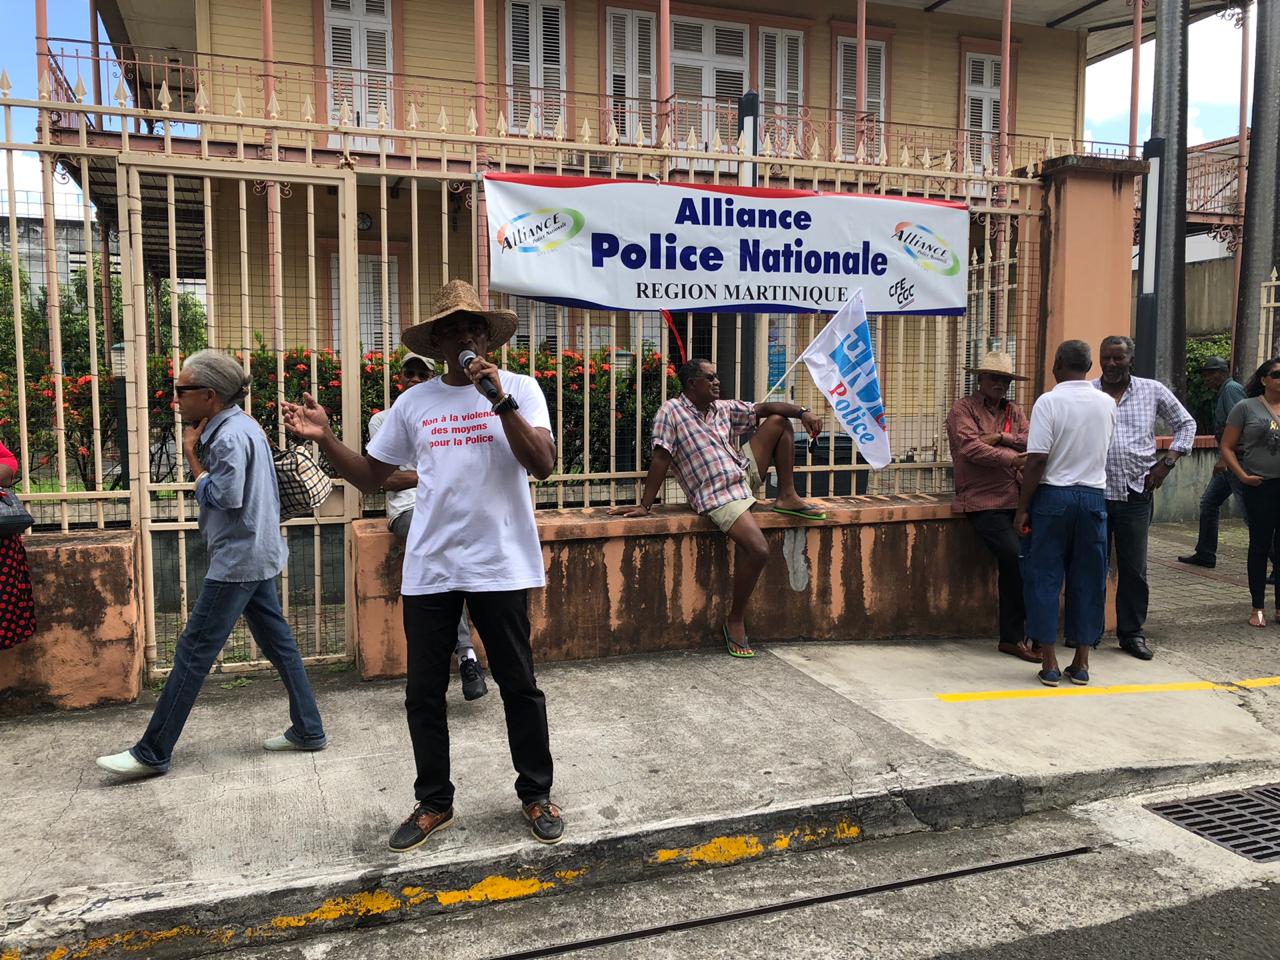     Mobilisation des policiers de Martinique

